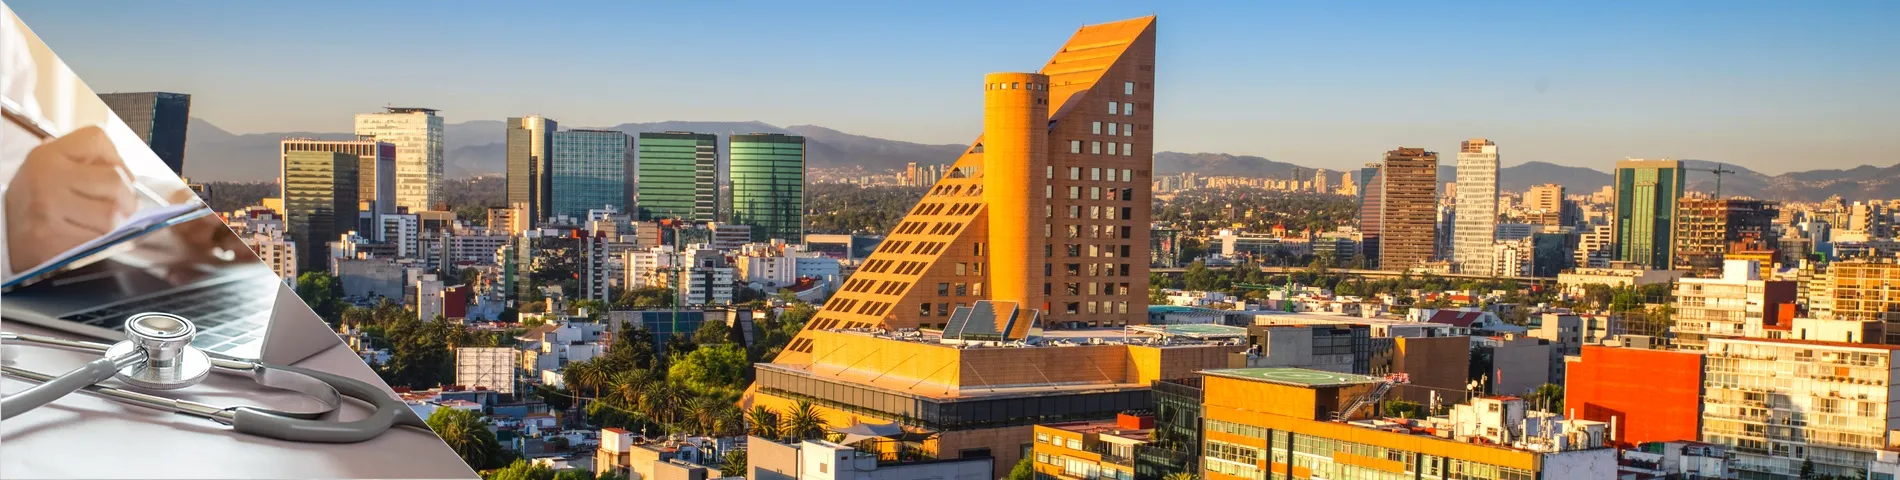 Mexico City - Health